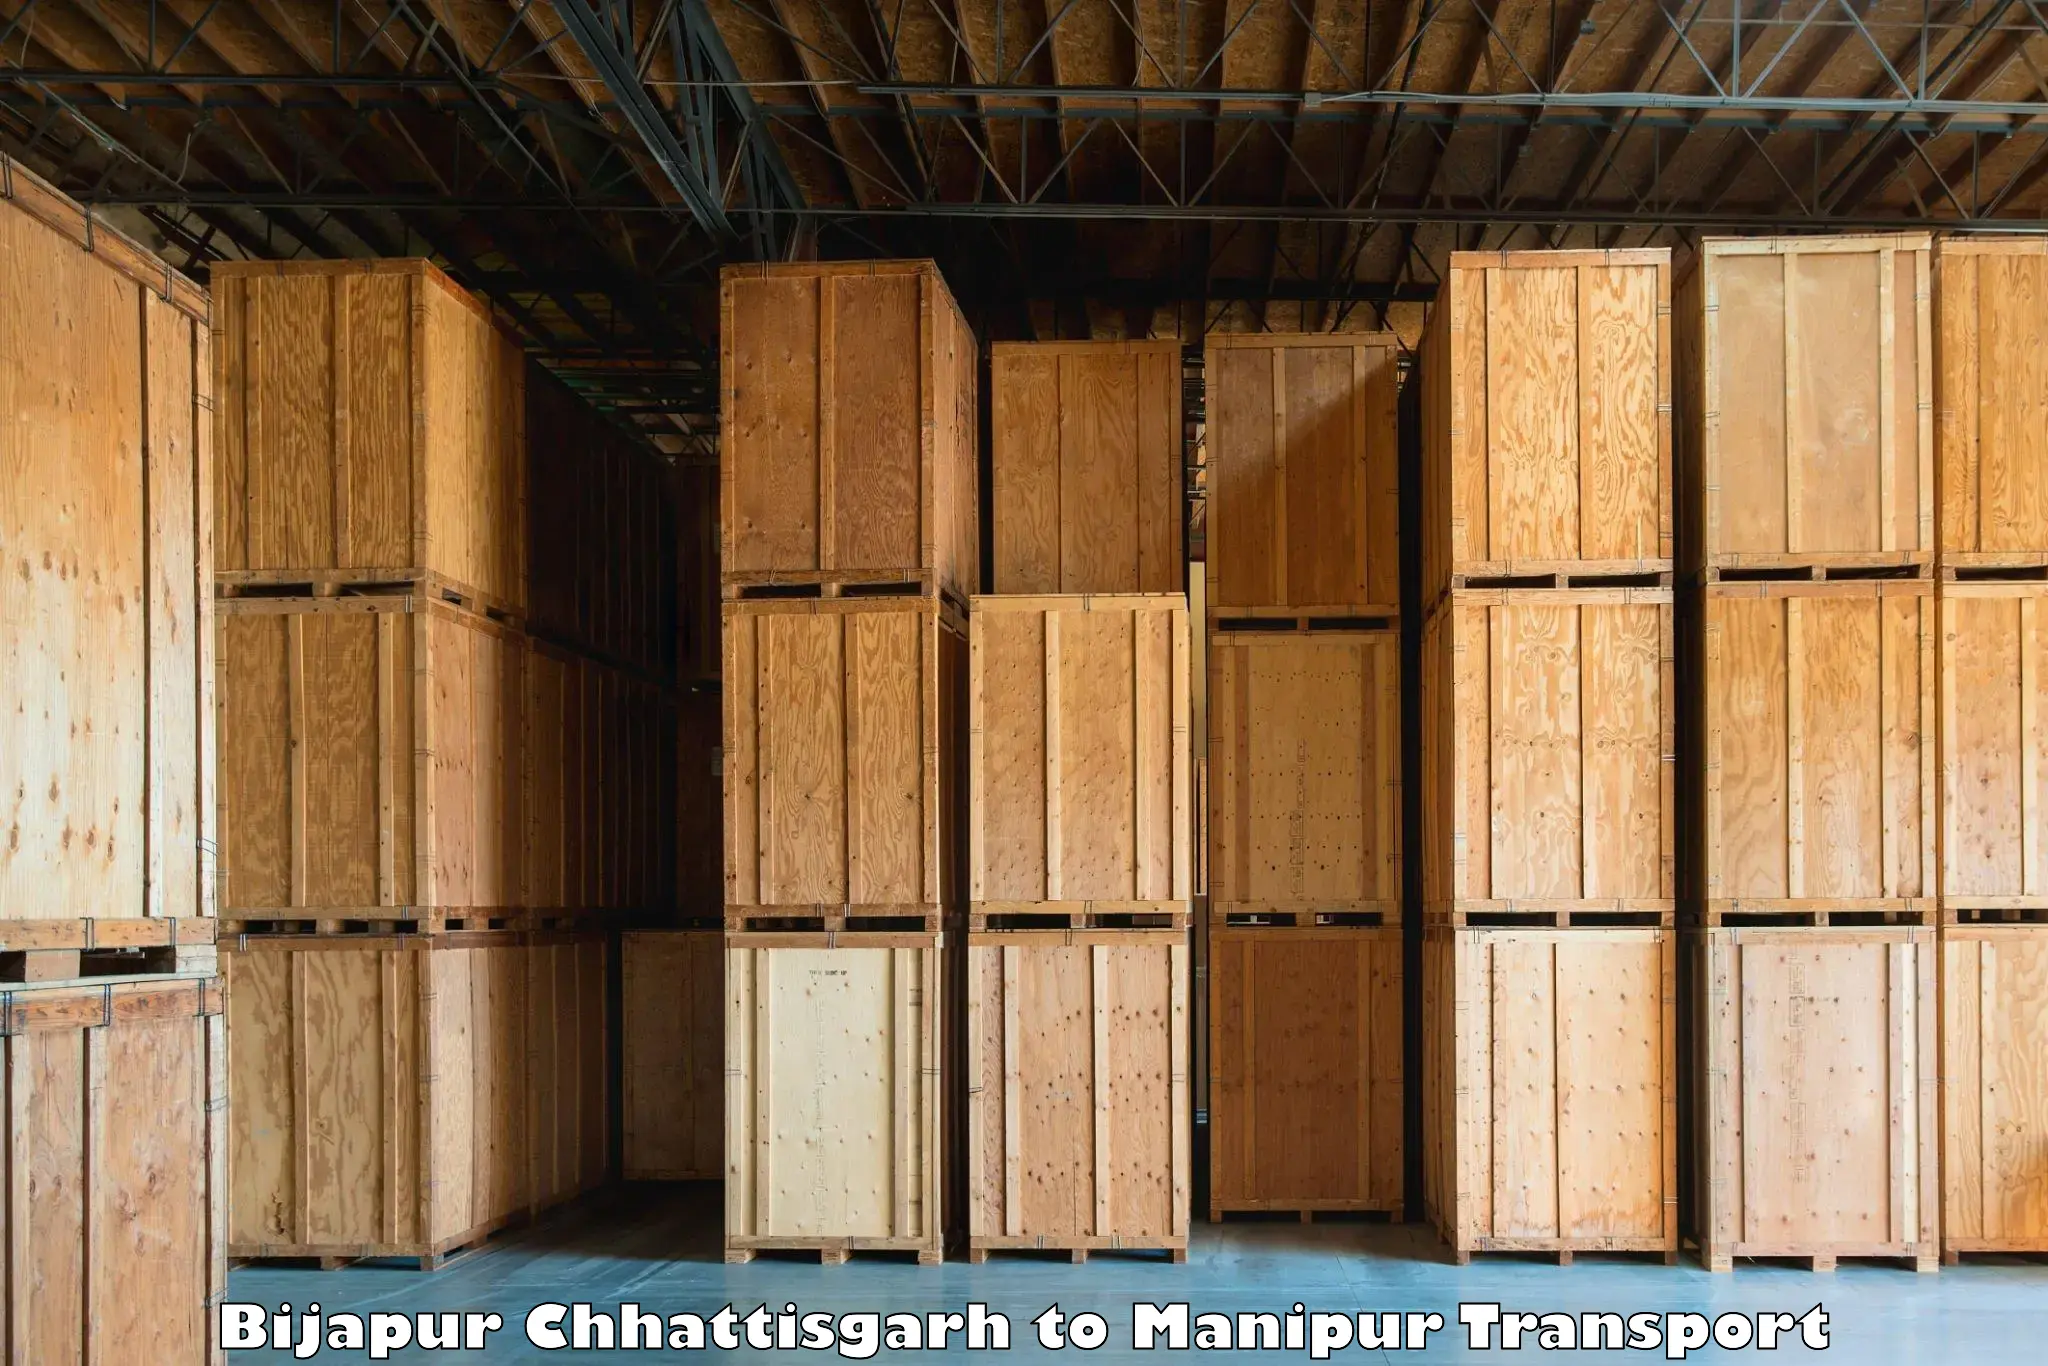 Goods delivery service in Bijapur Chhattisgarh to Churachandpur